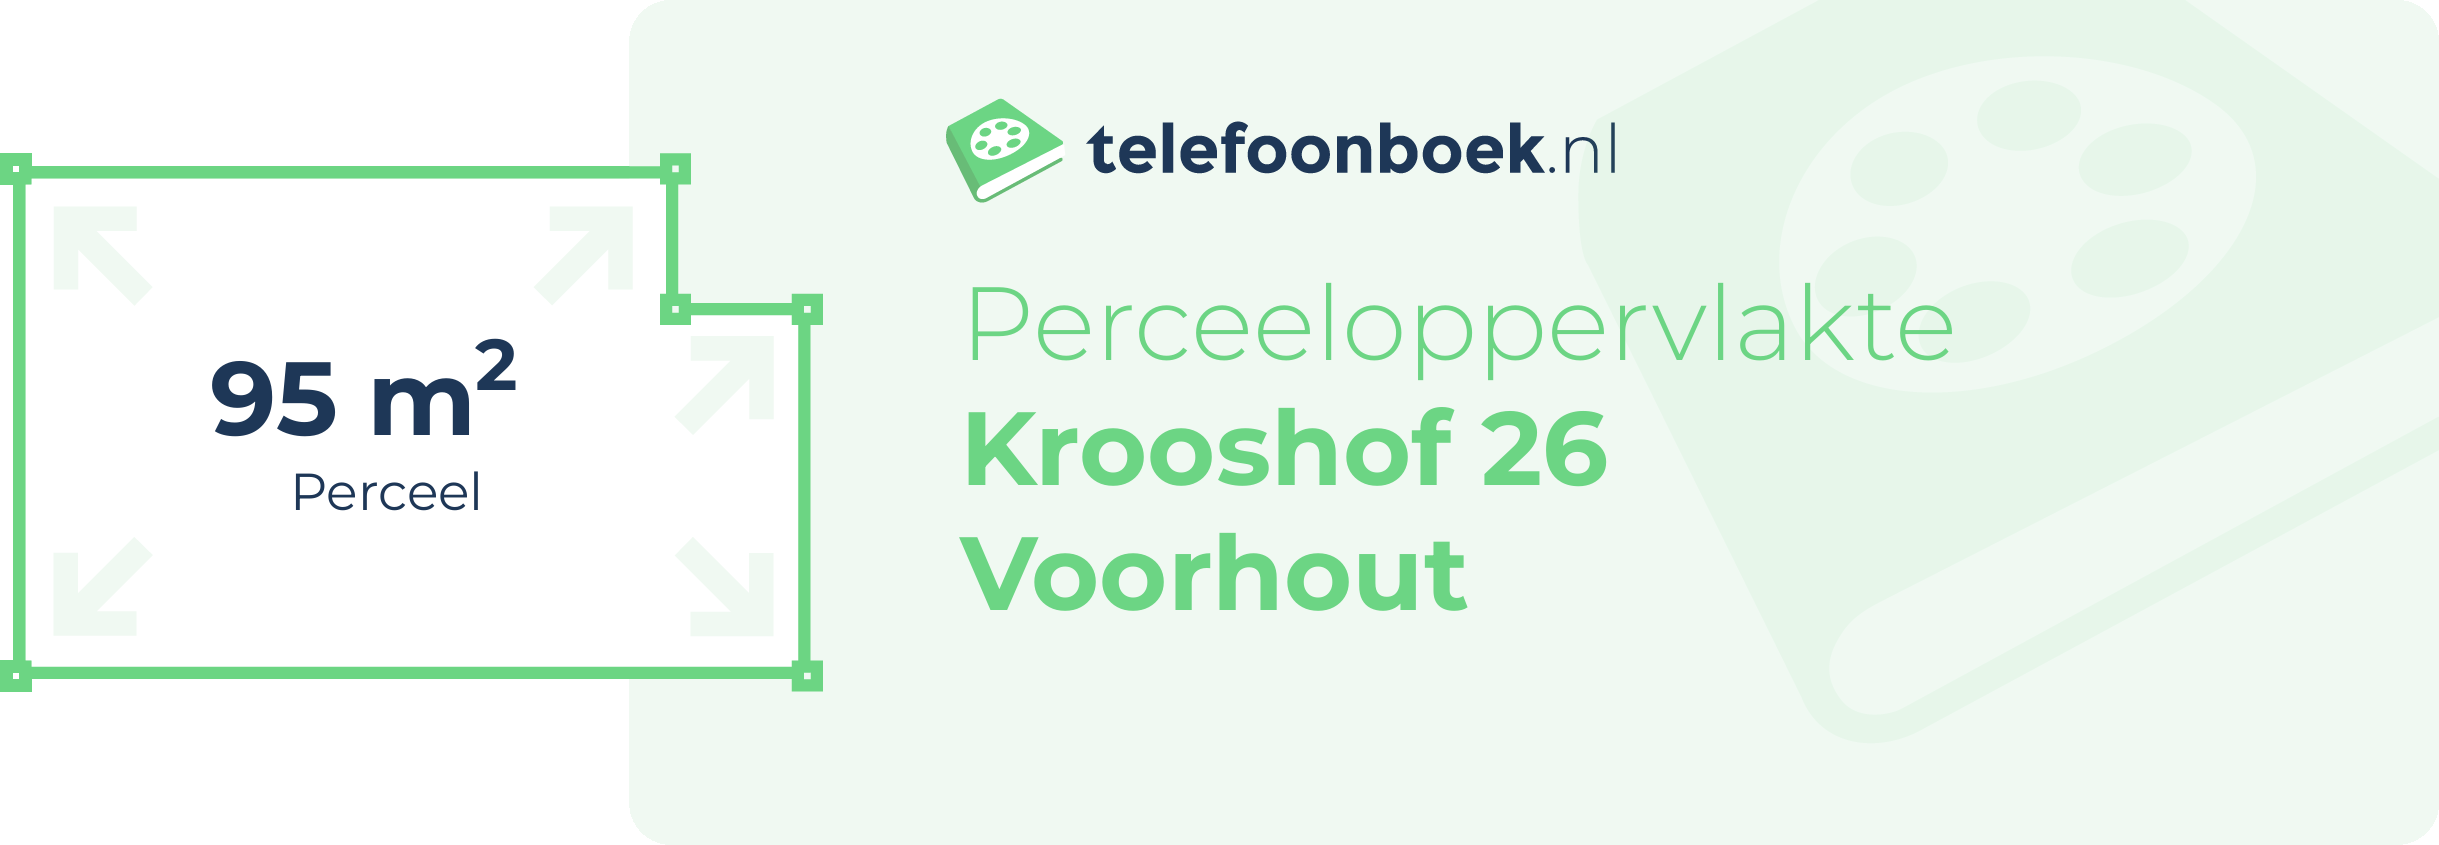 Perceeloppervlakte Krooshof 26 Voorhout